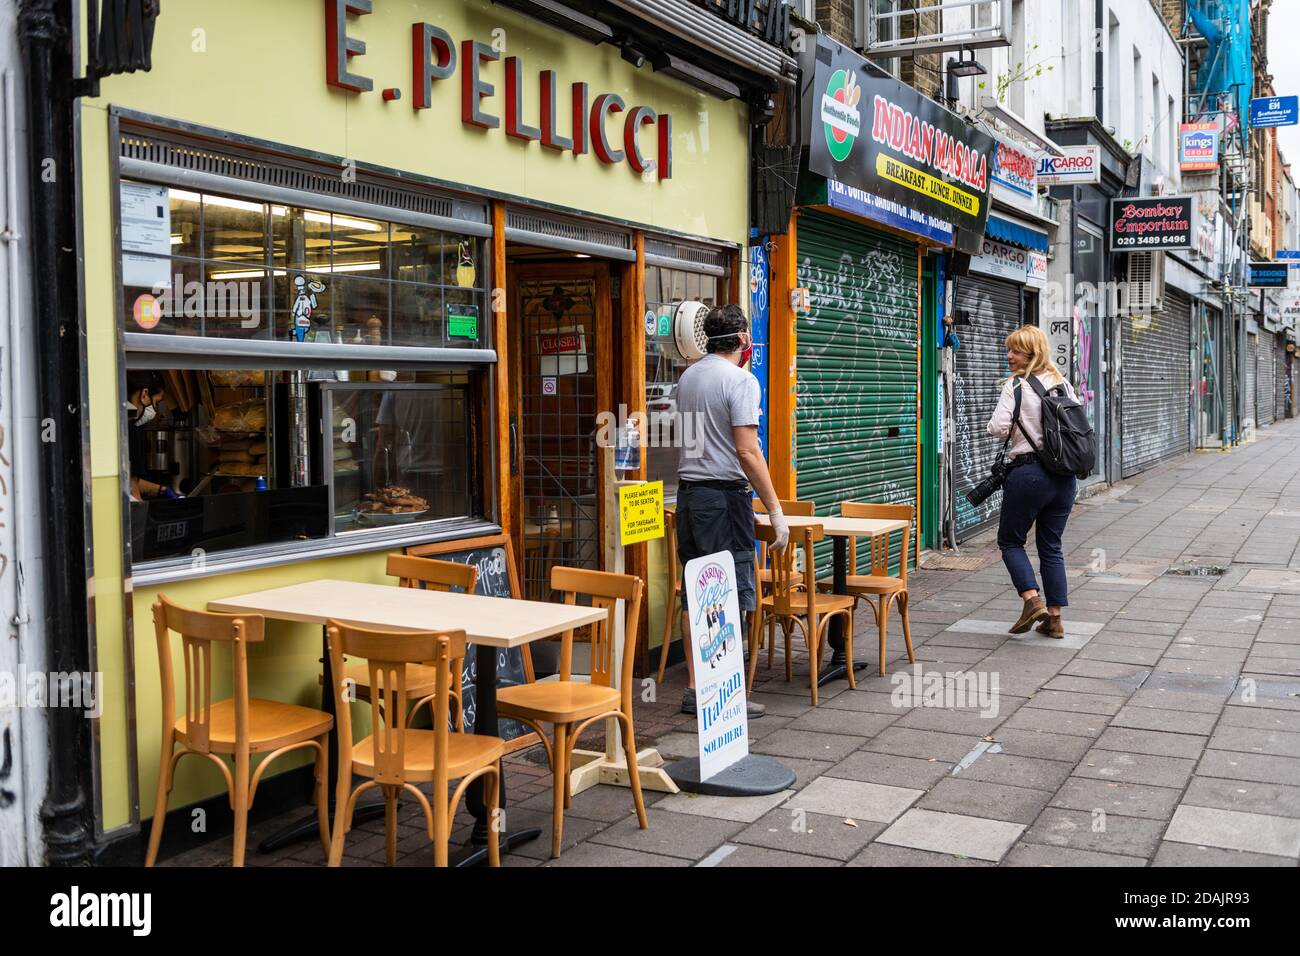 Il famoso caffè italiano East End E. Pellicci riapre dopo il blocco Covid-19. Foto Stock